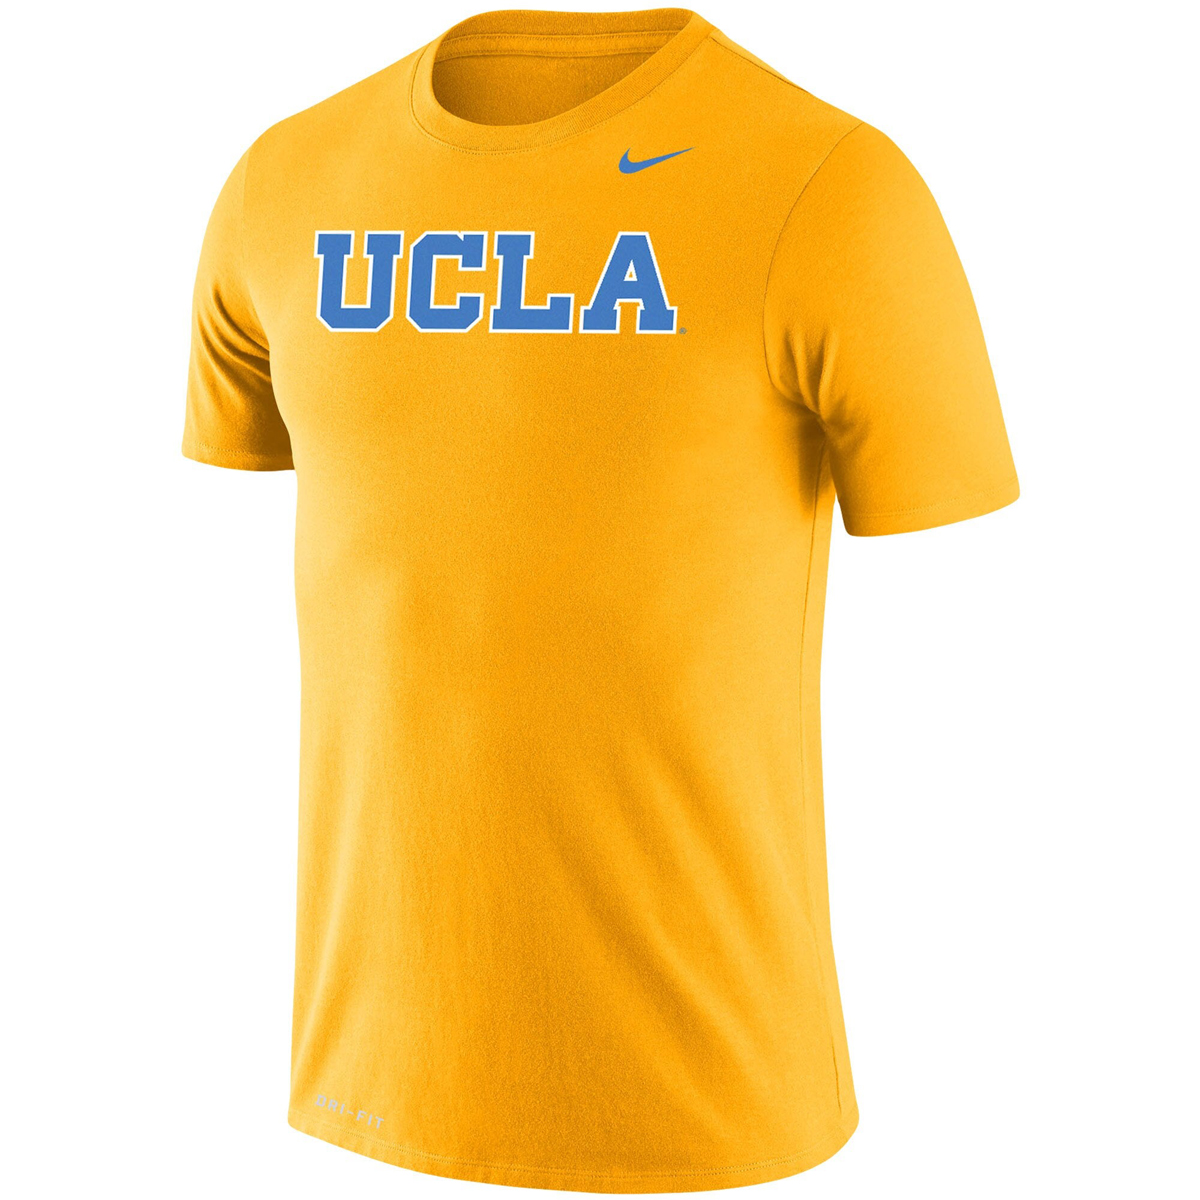 UCLA-Nike-Dunk-Low-T-Shirt-2